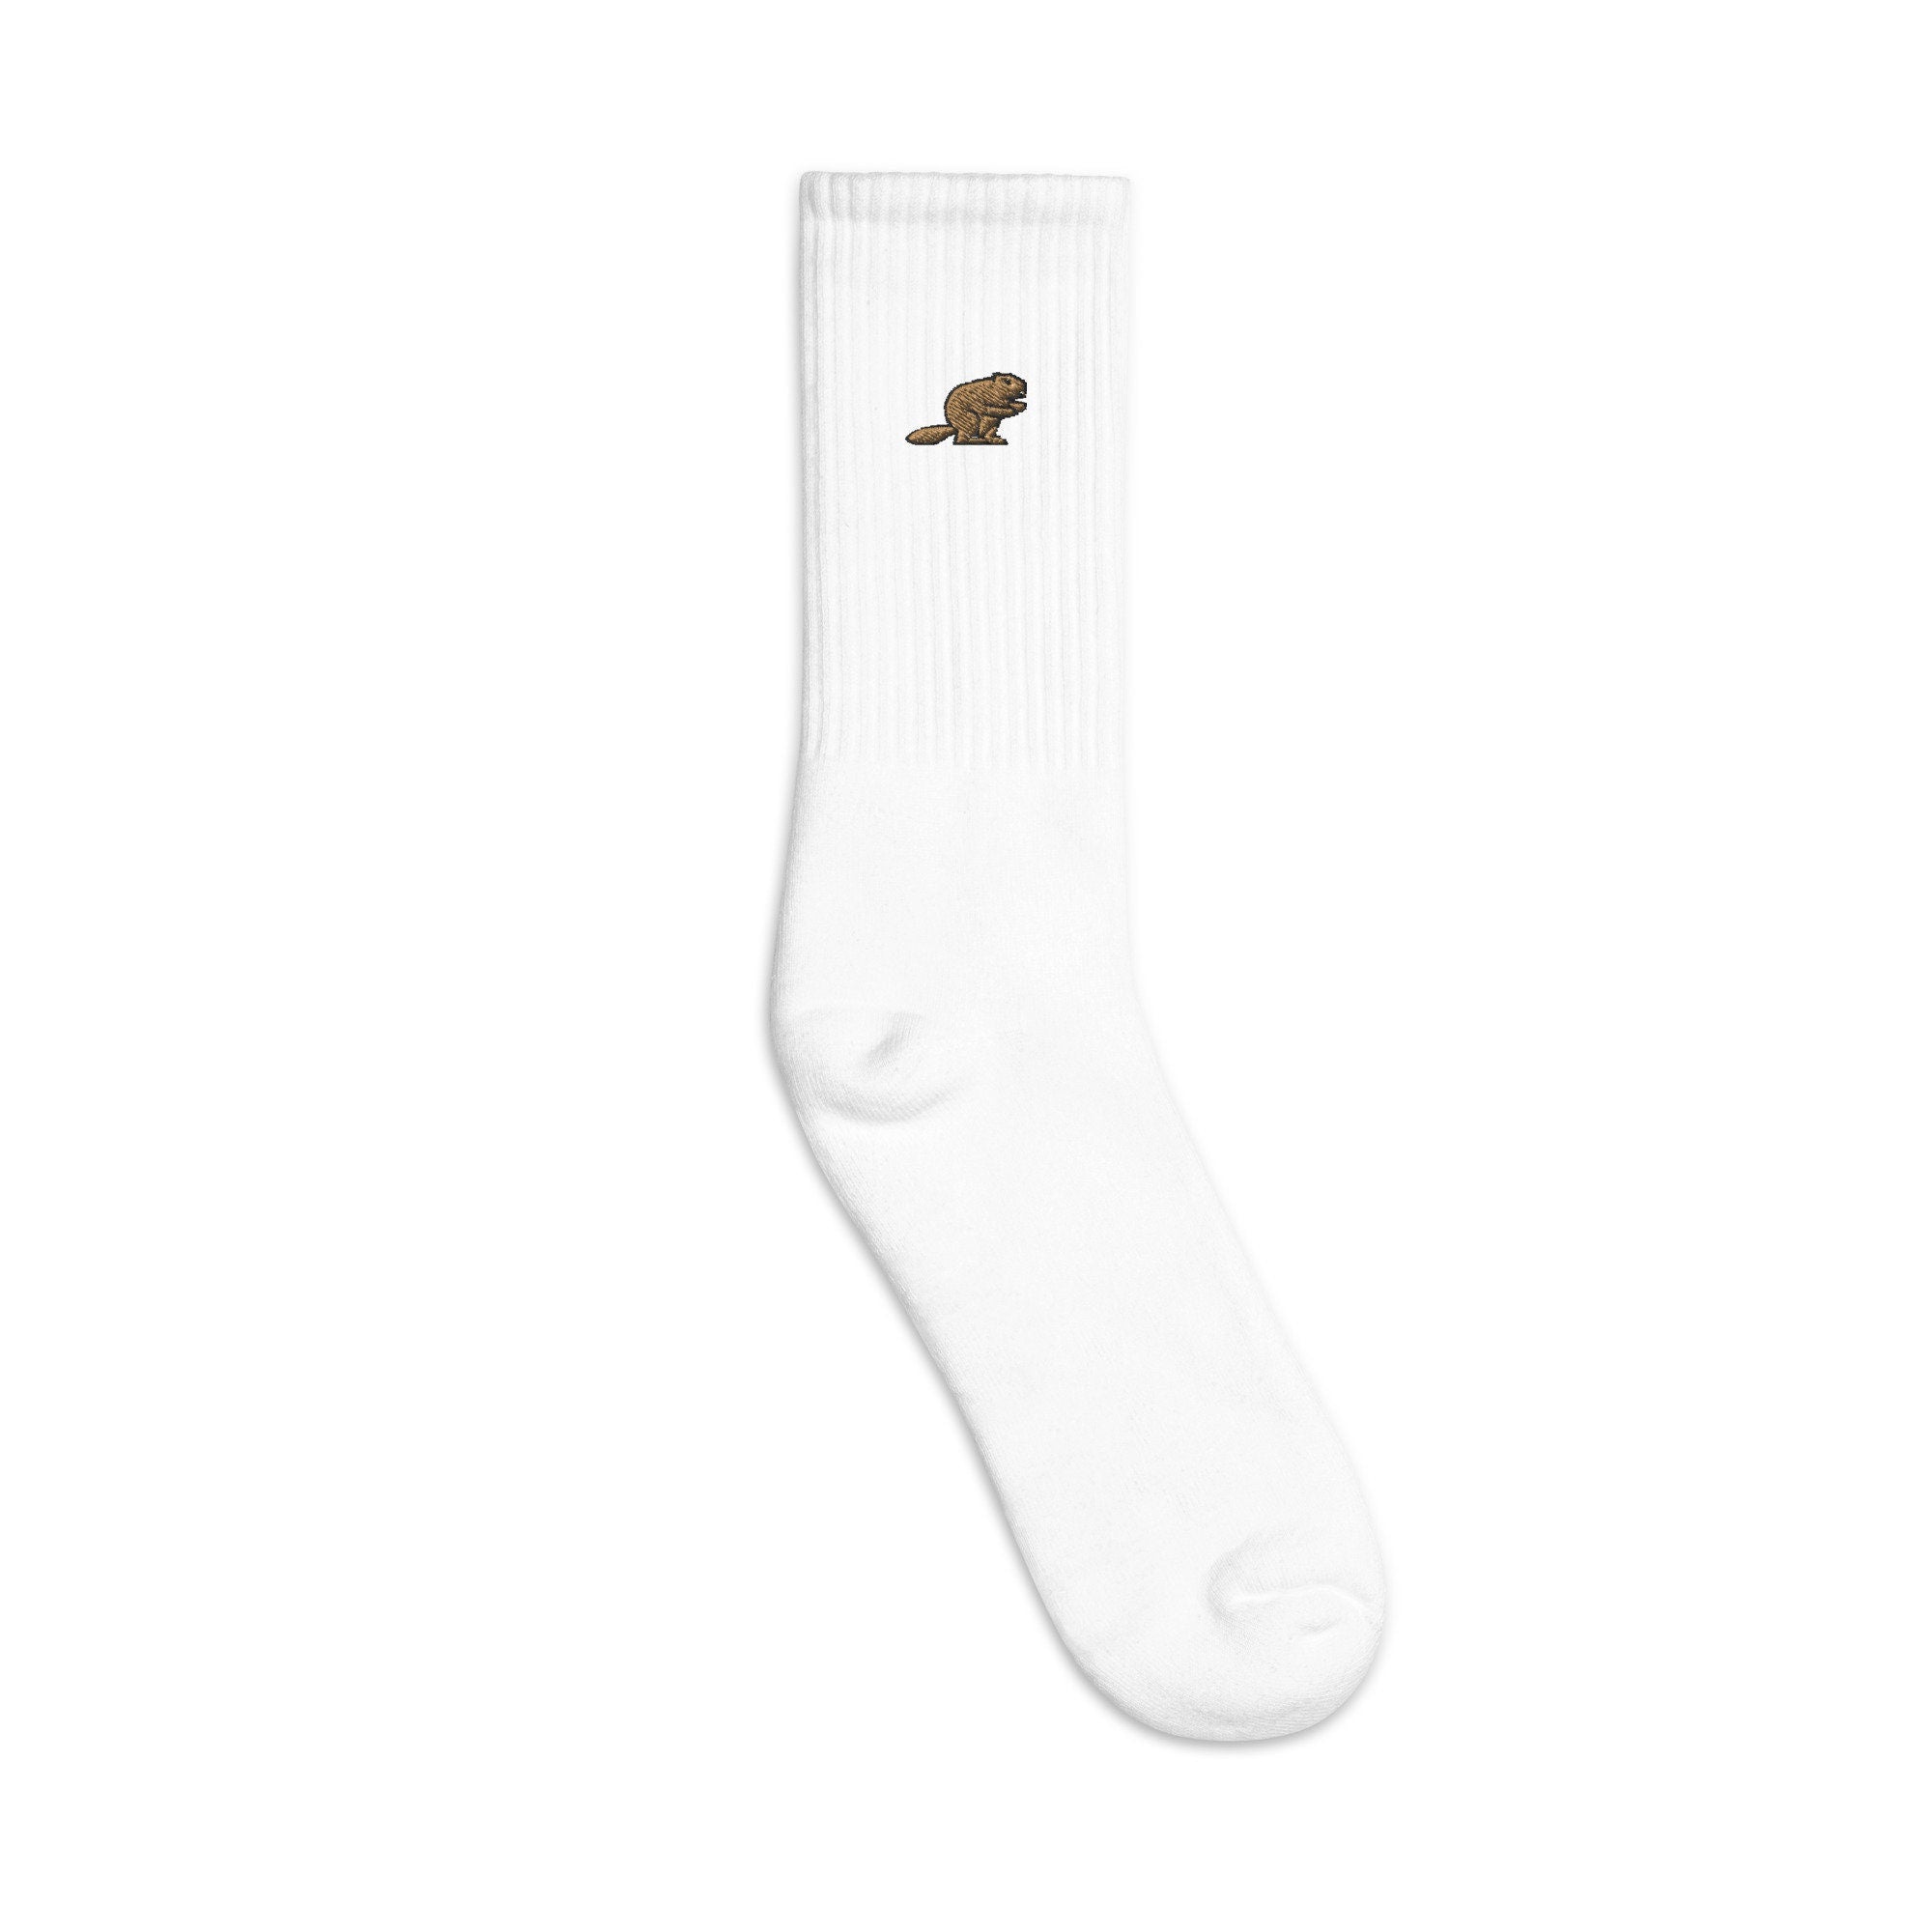 Beaver Embroidered Socks, Premium Embroidered Socks, Long Socks Gift - Multiple Colors